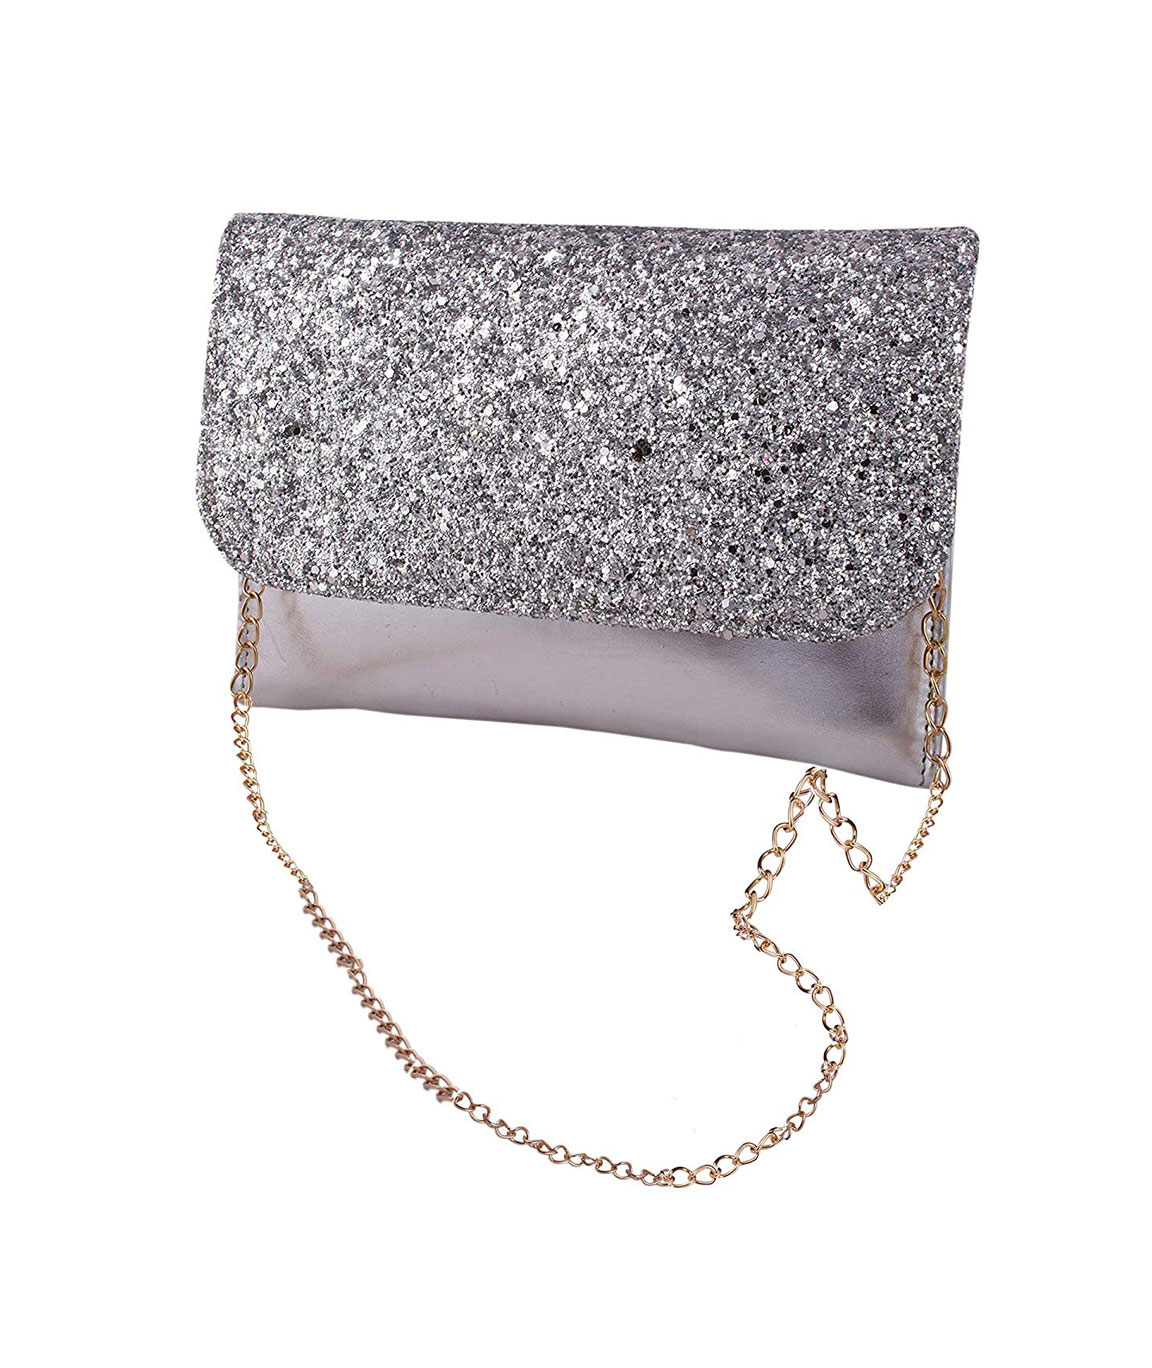 Buy Brown Tote Handbag 9 Inch Online at Best Prices